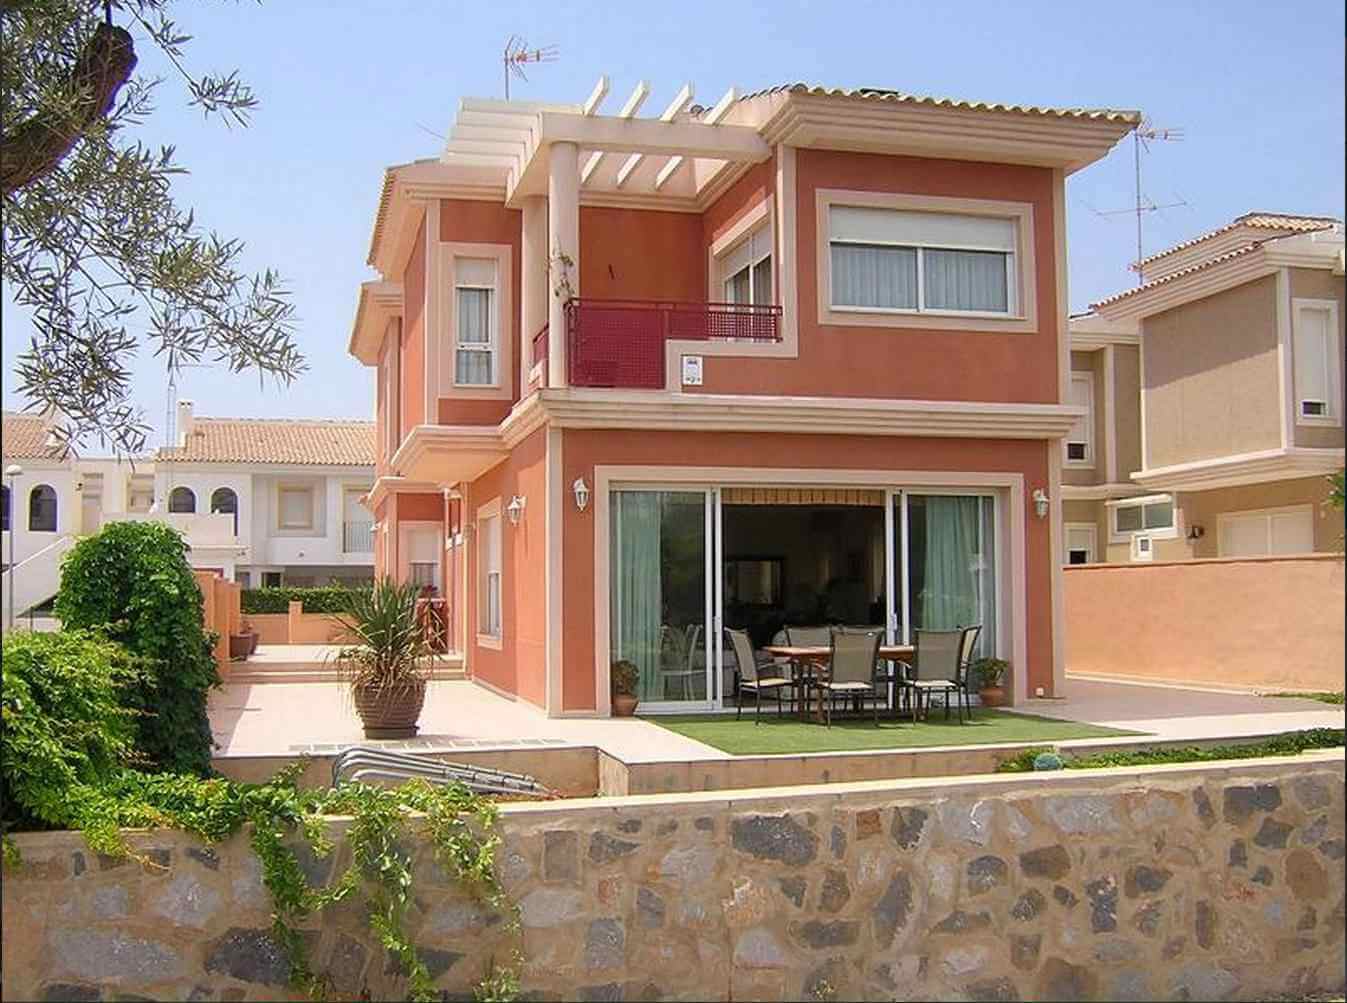 Как выбрать риэлтора, чтобы продать недвижимость в испании?